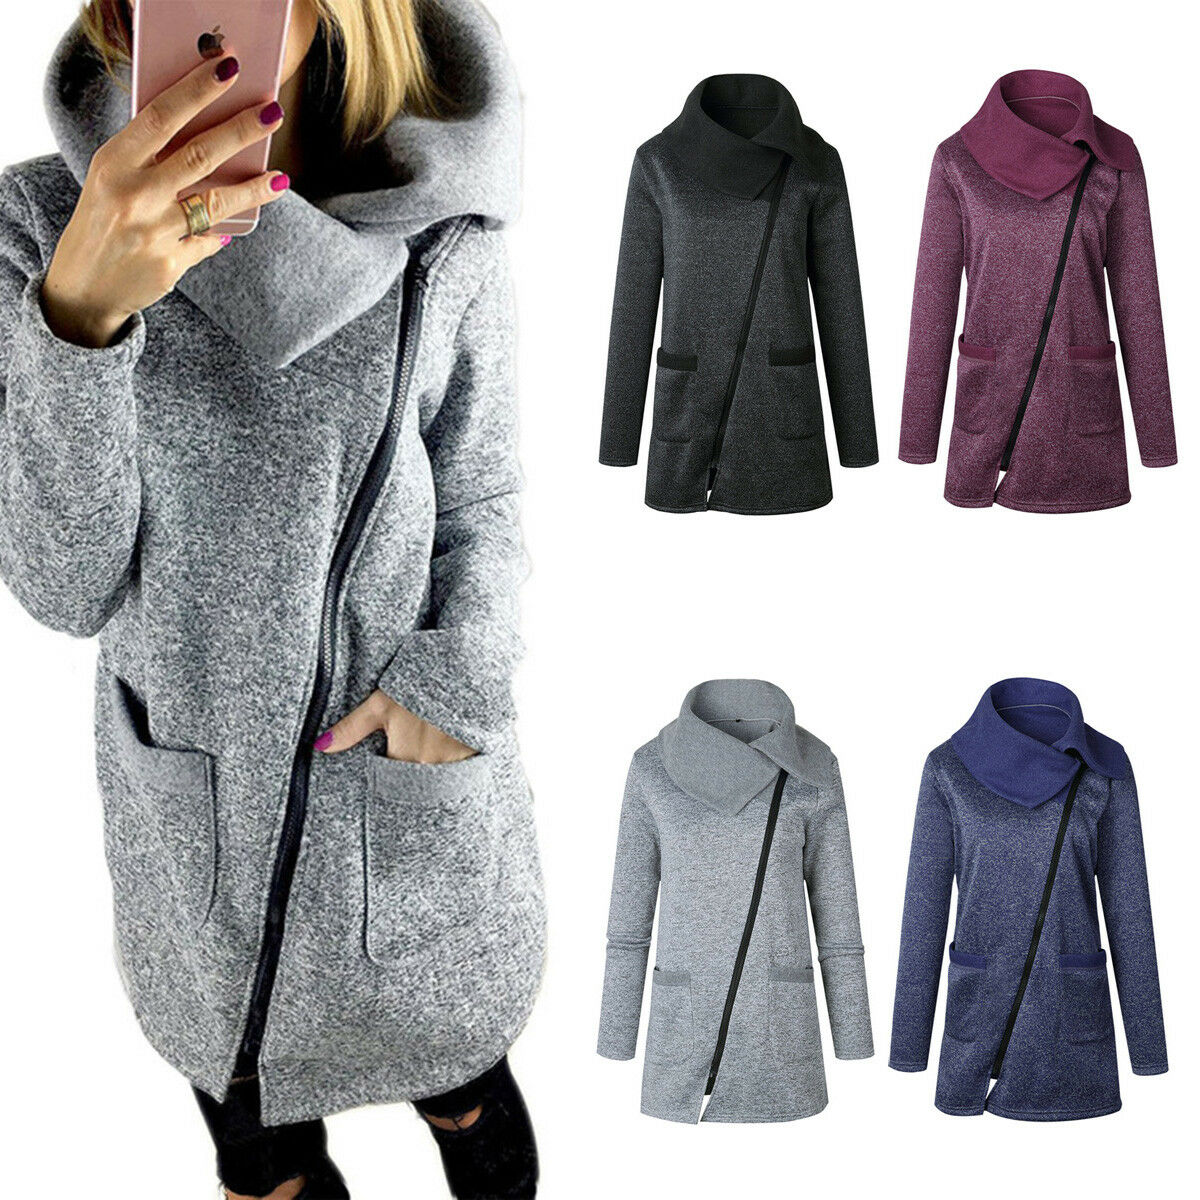 Fashion Women Winter Trench Coat Warm Parka Overcoat Long Jacket Zipper Outwear